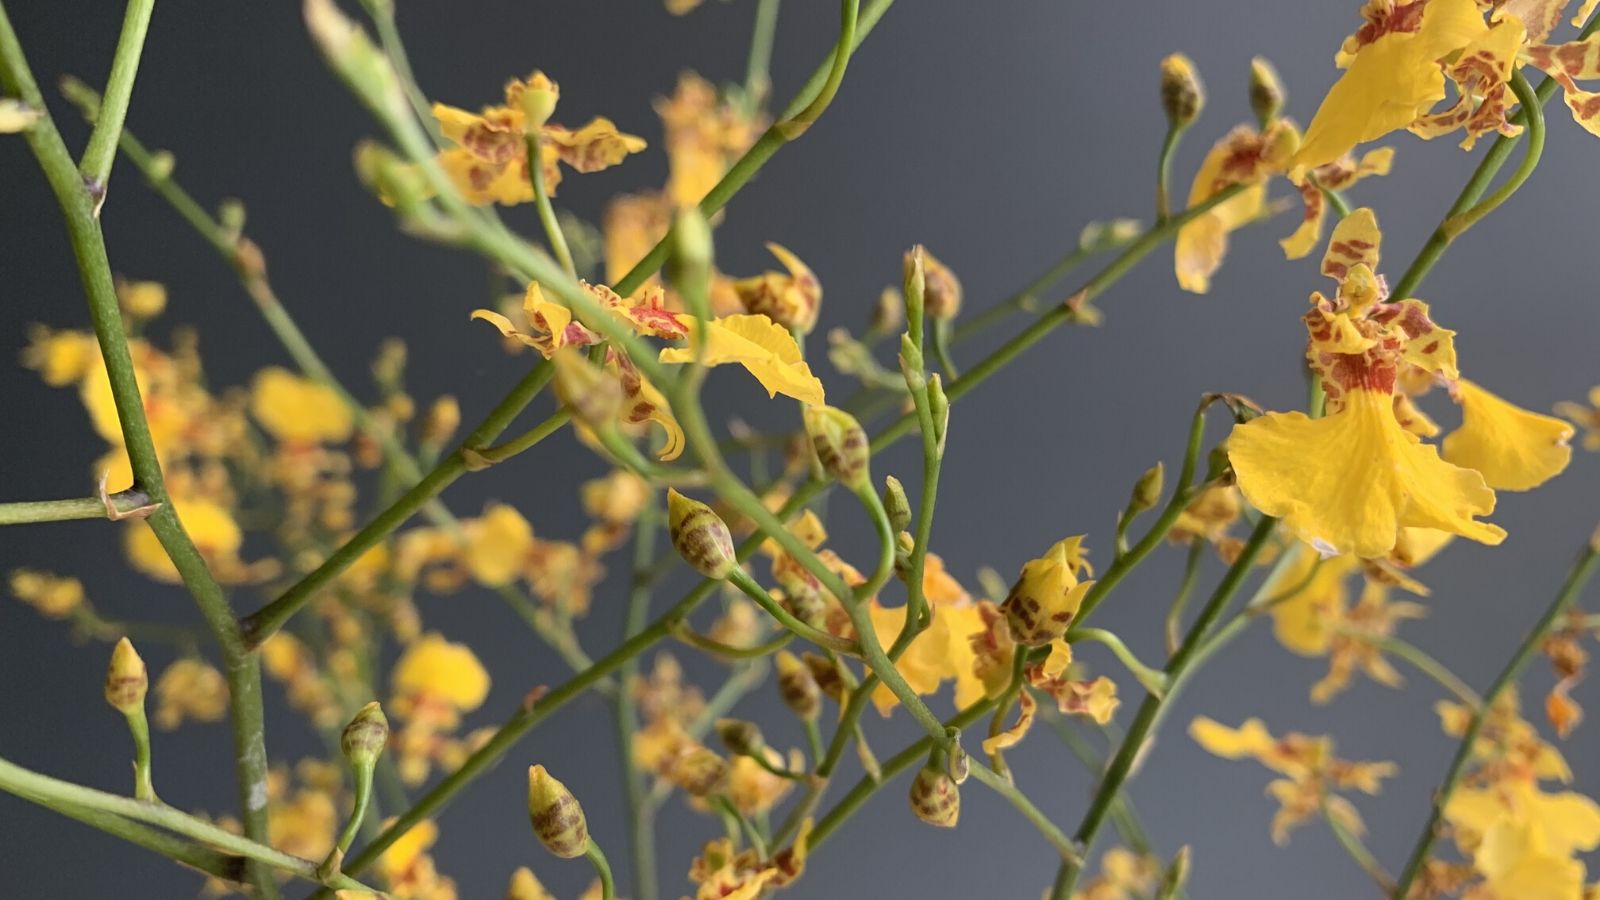 oncidium-golden-shower-cut-orchids-on-thursd-facebook